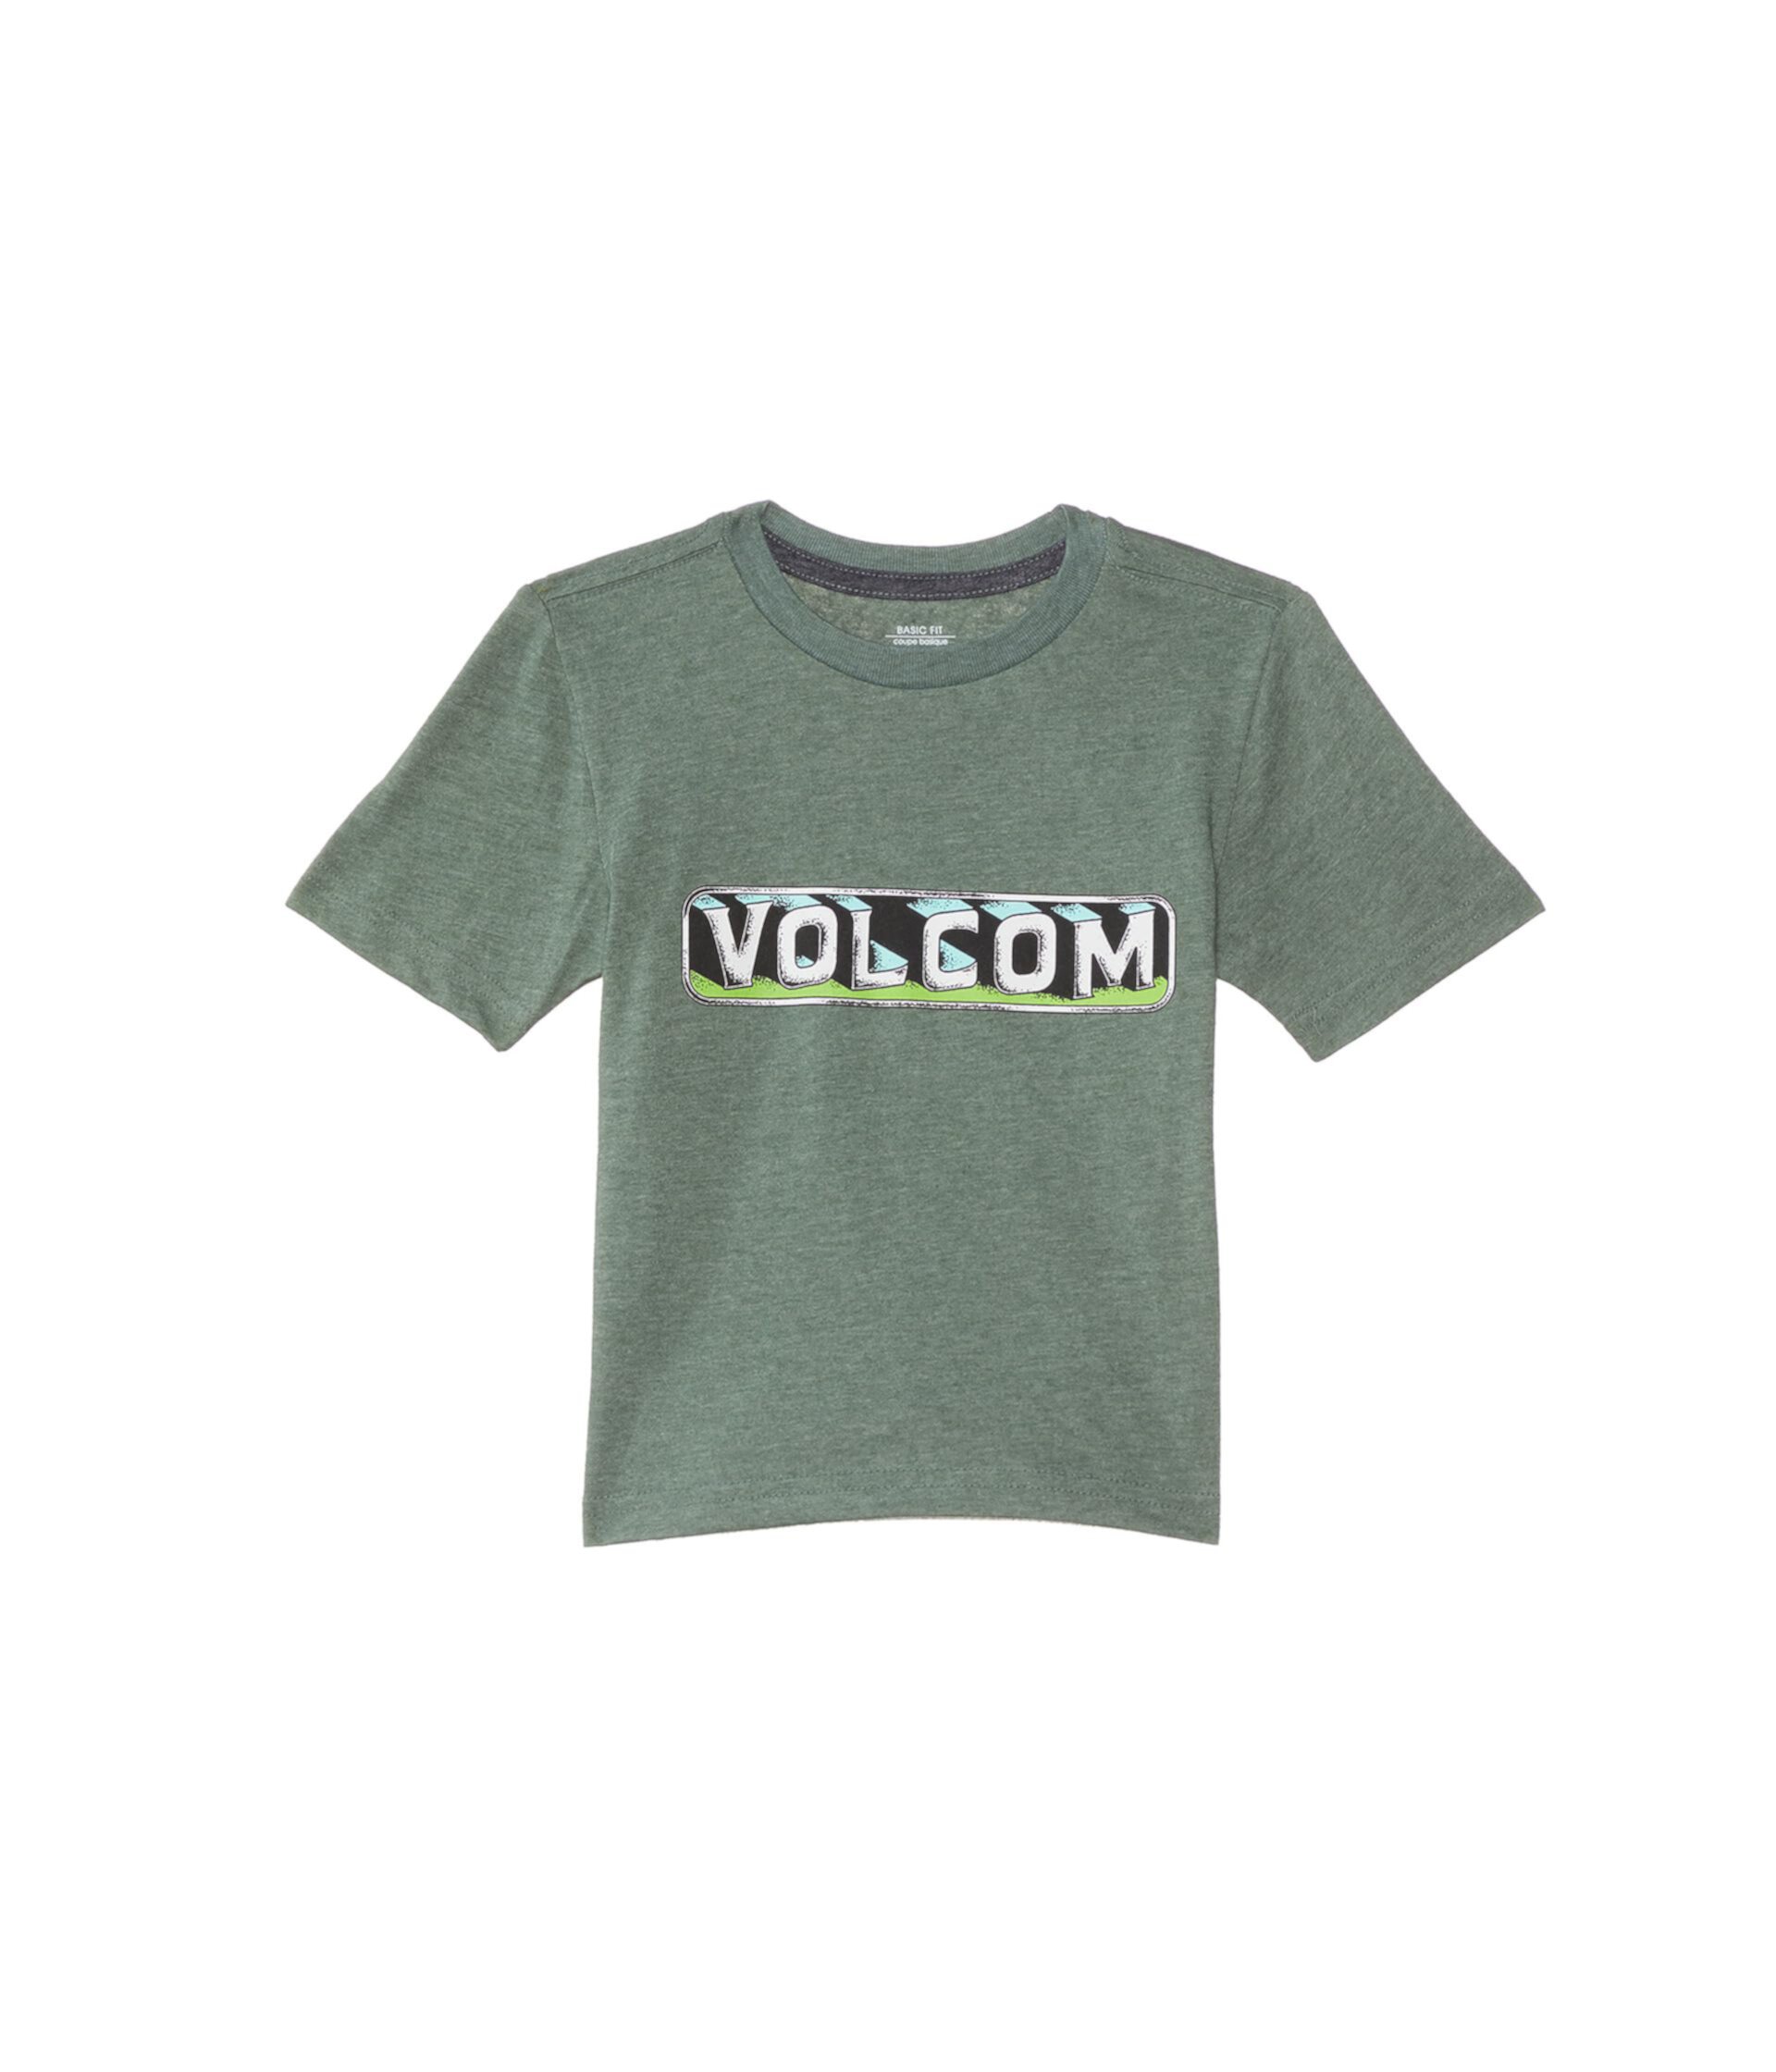 Травяной перевал (большой ребенок/маленький ребенок/малыш) Volcom Kids